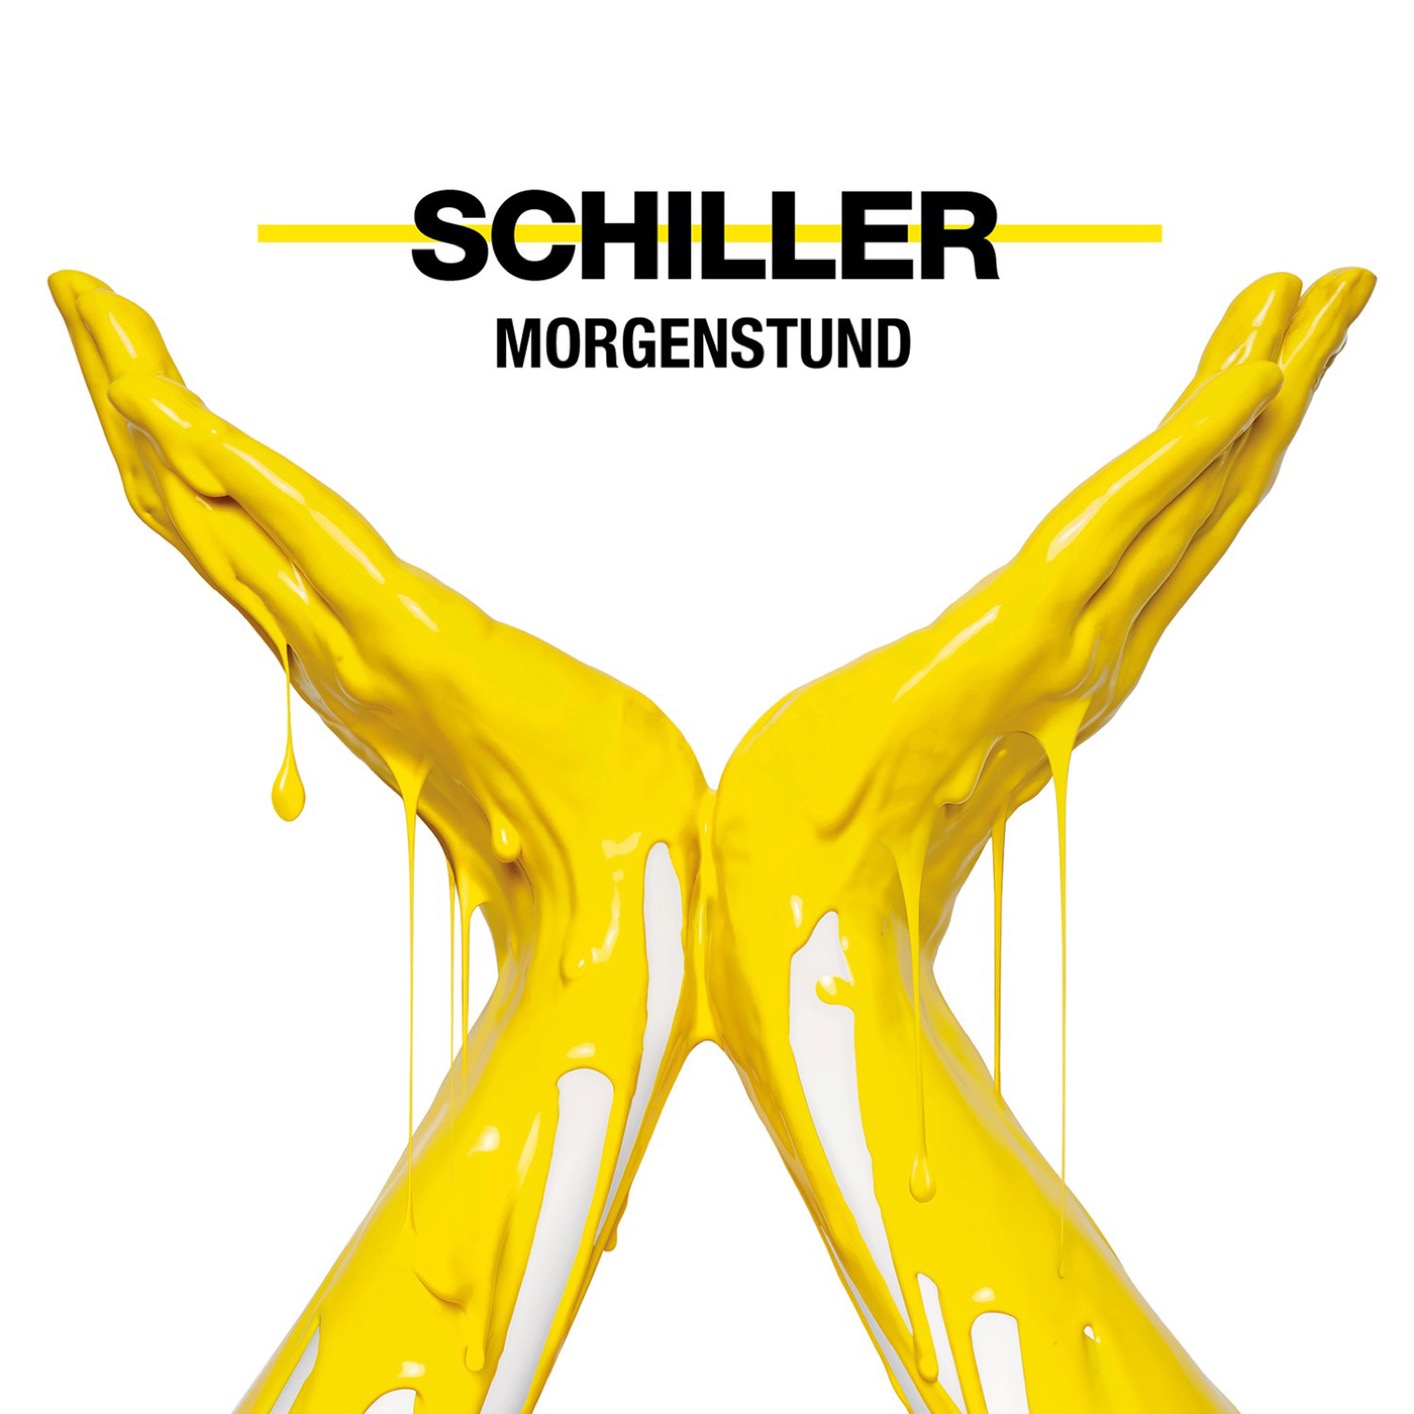 Schiller - Morgenstund (2019) [FLAC 24bit/96kHz]